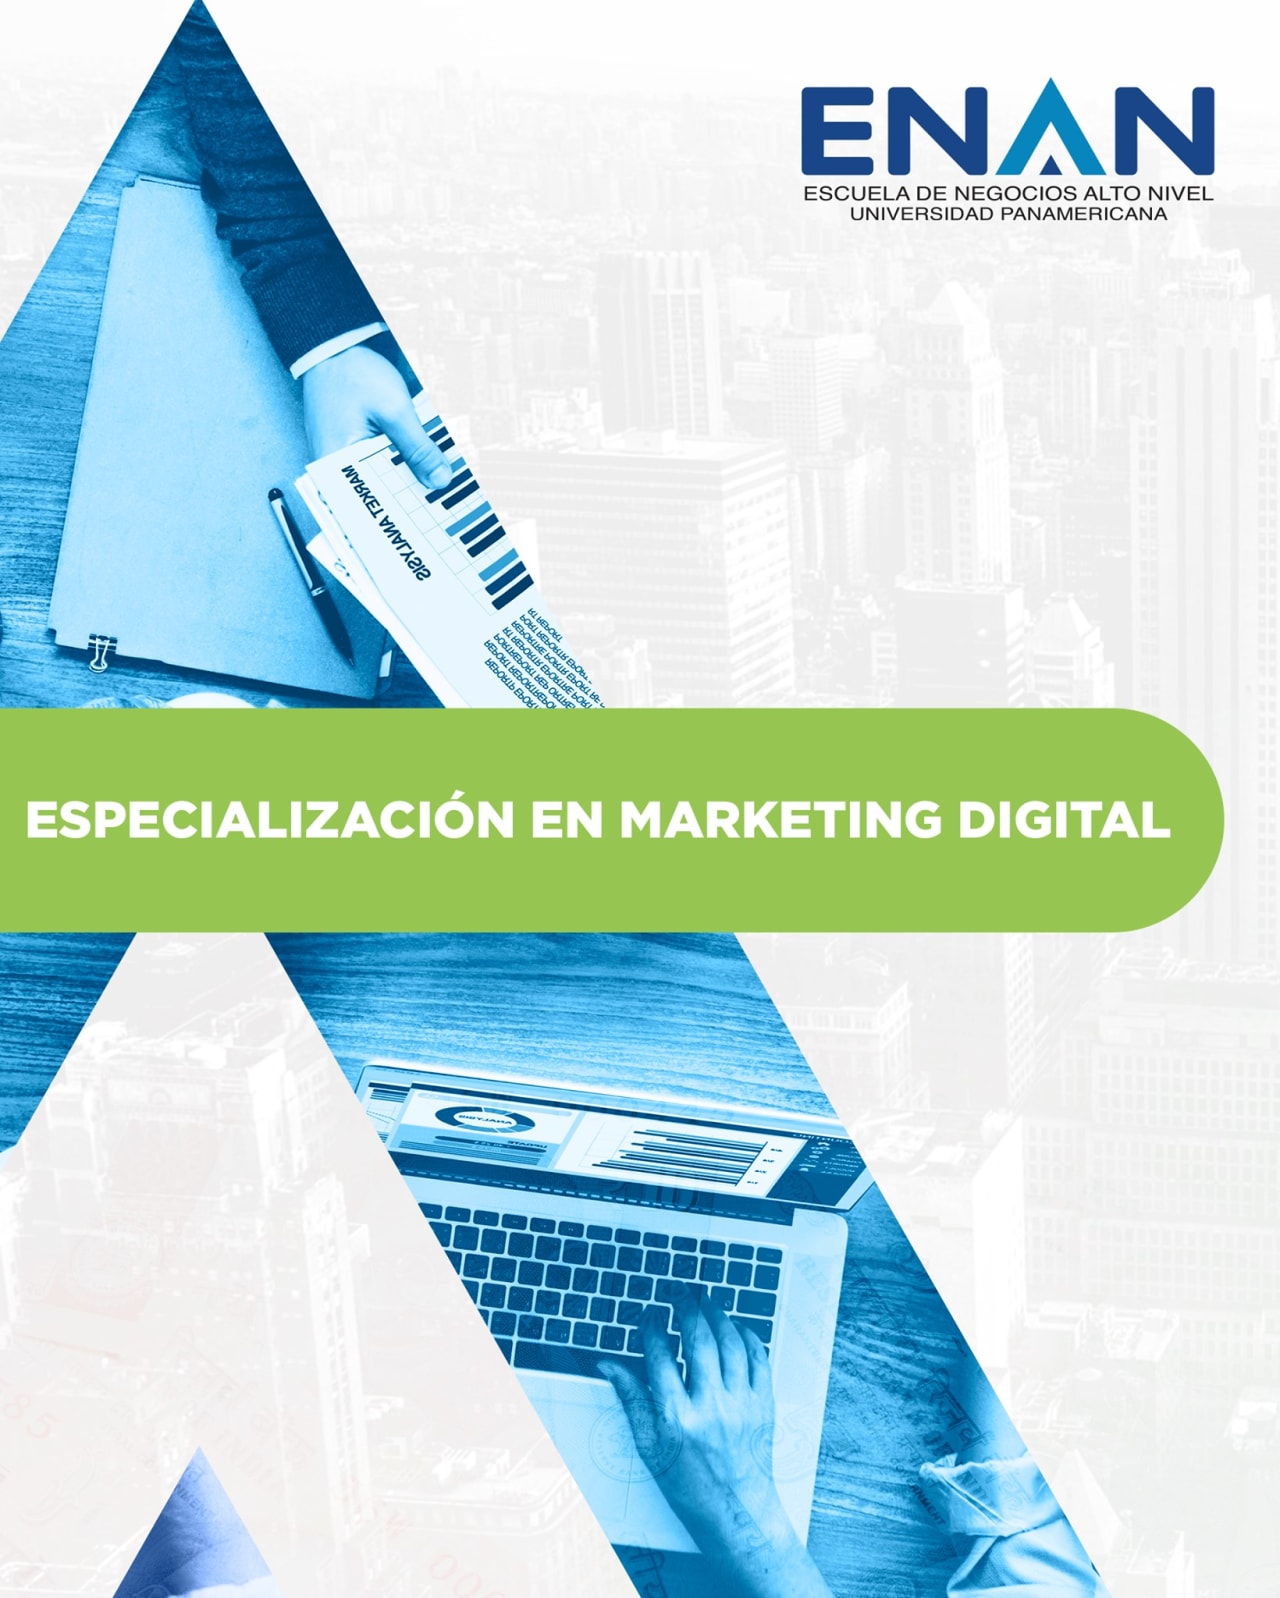 Escuela de Negocios Alto Nivel - Universidad Panamericana de Guatemala التخصص في التسويق الرقمي